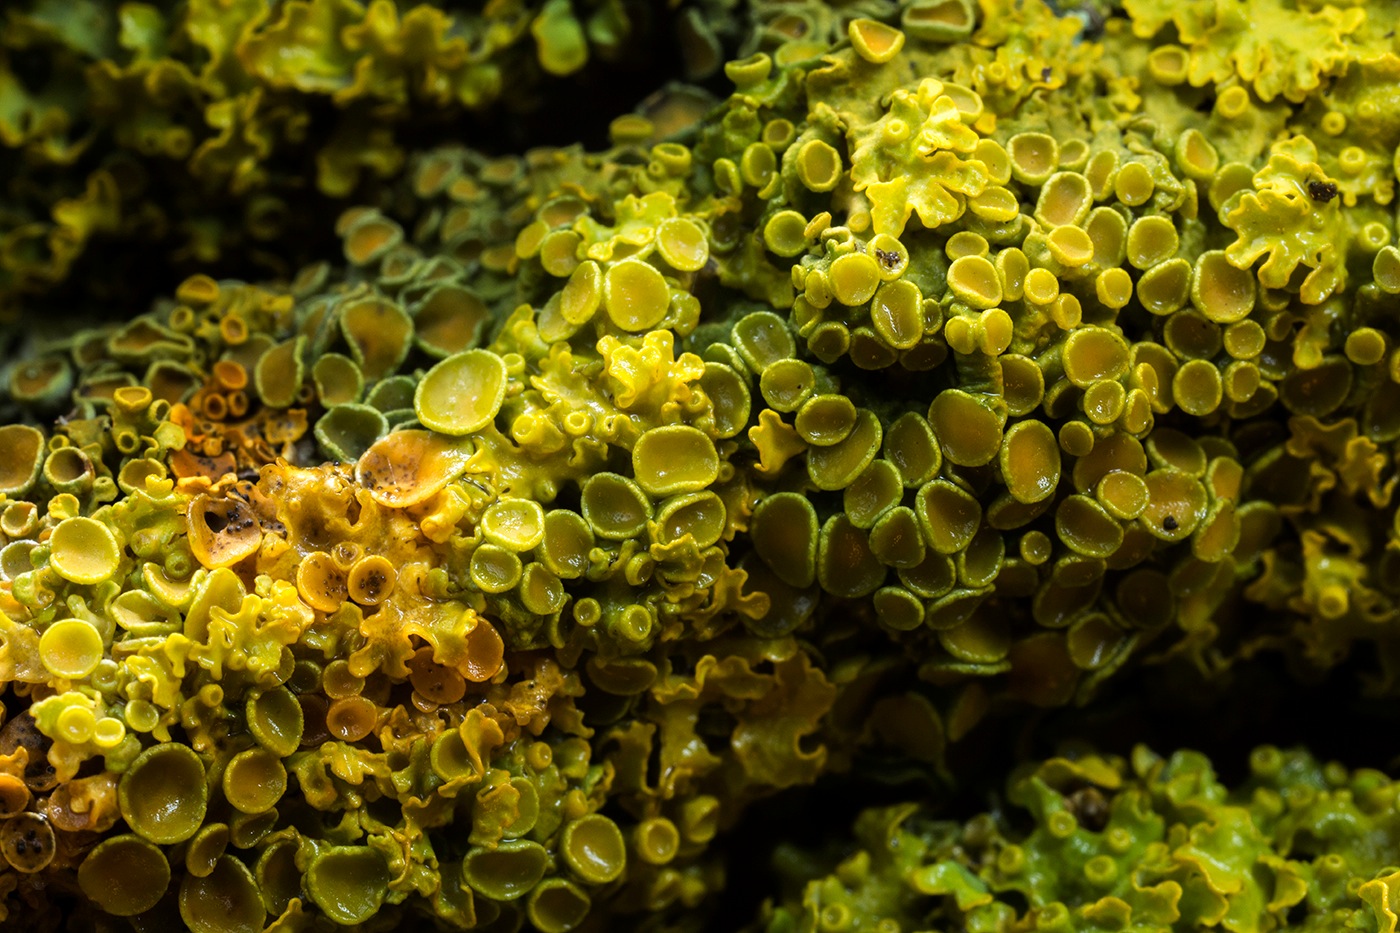 Lichen encroûtant jaune ou parmélie des murailles (Xanthoria p